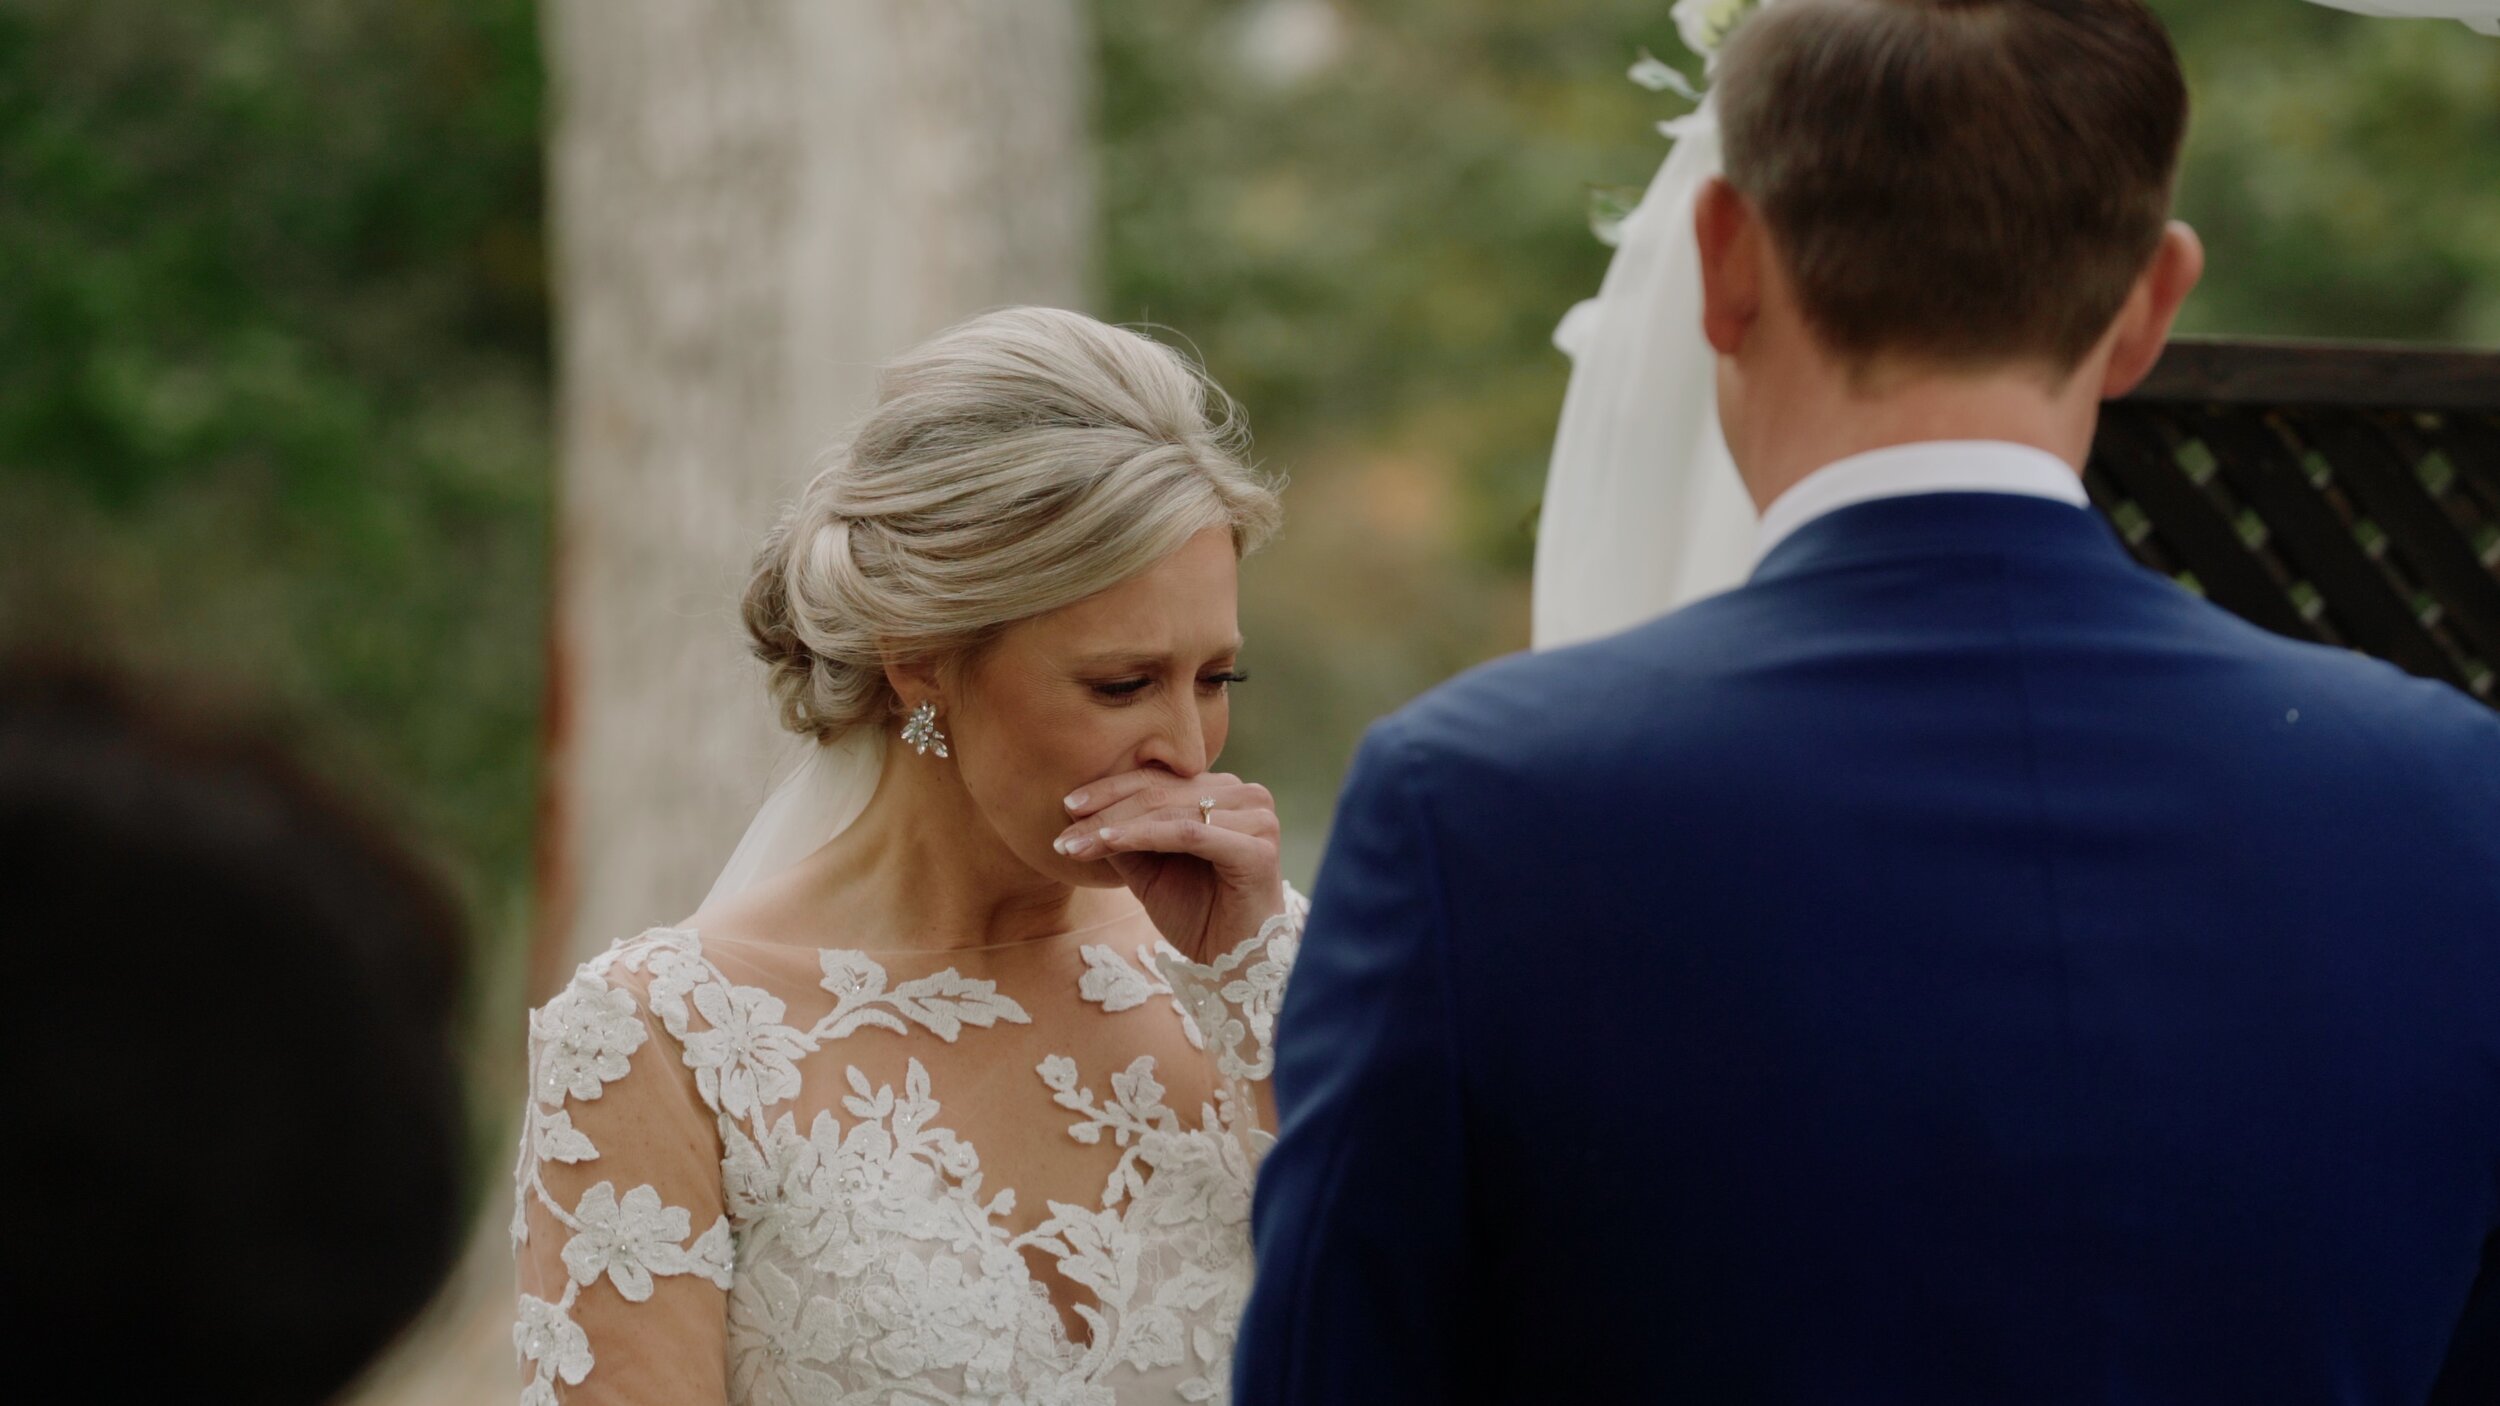 emotional bride cries during her wedding near St. Louis Missouri